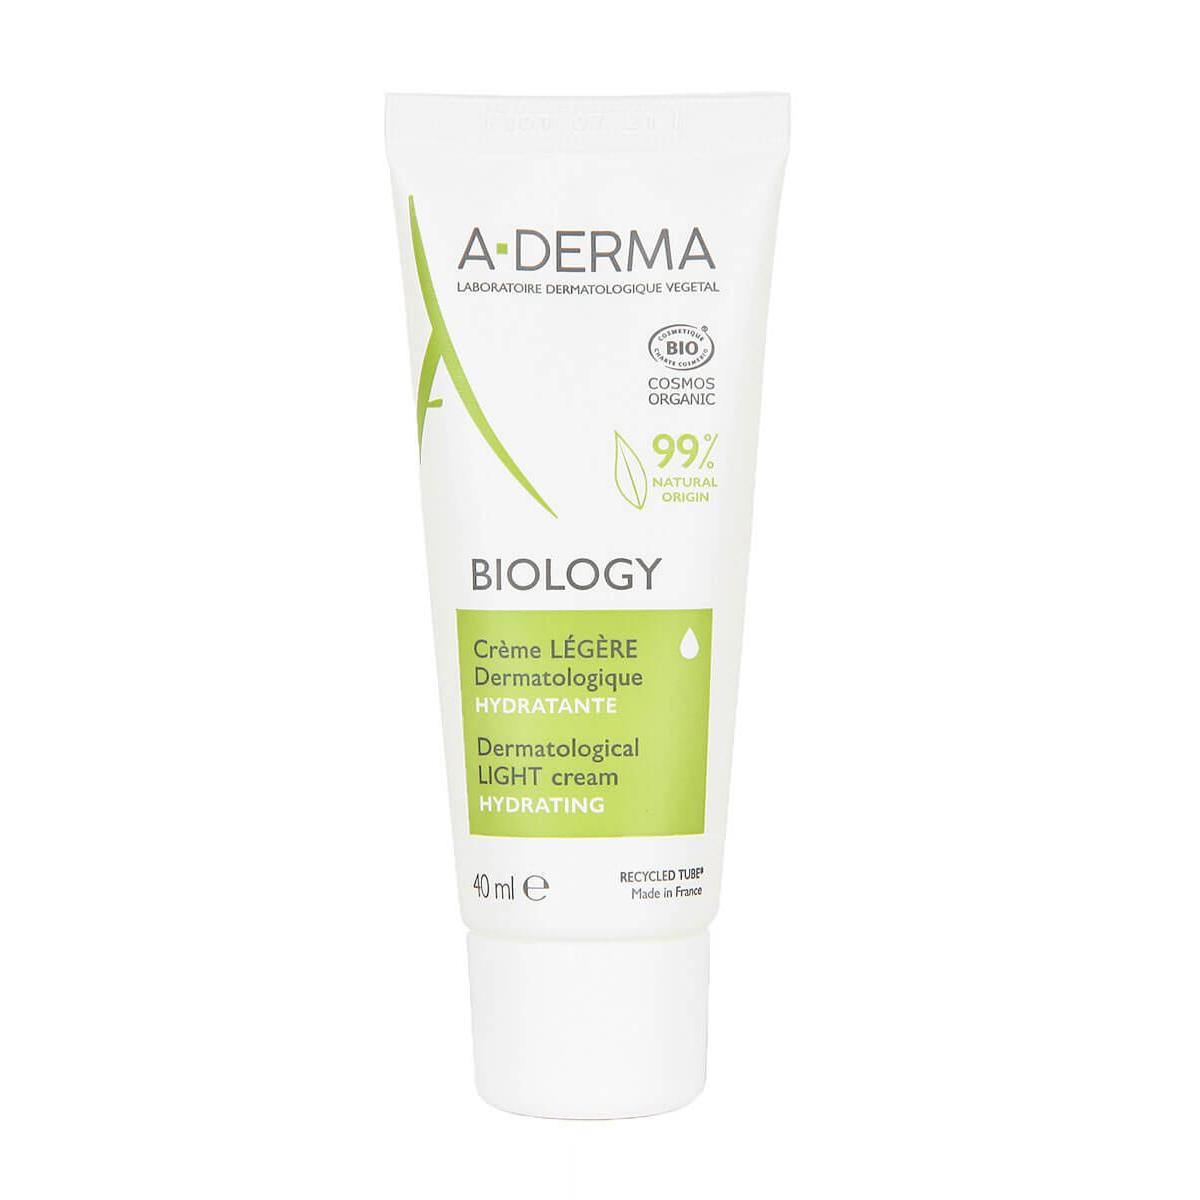 A-Derma - A-derma biology crema ligera 40ml